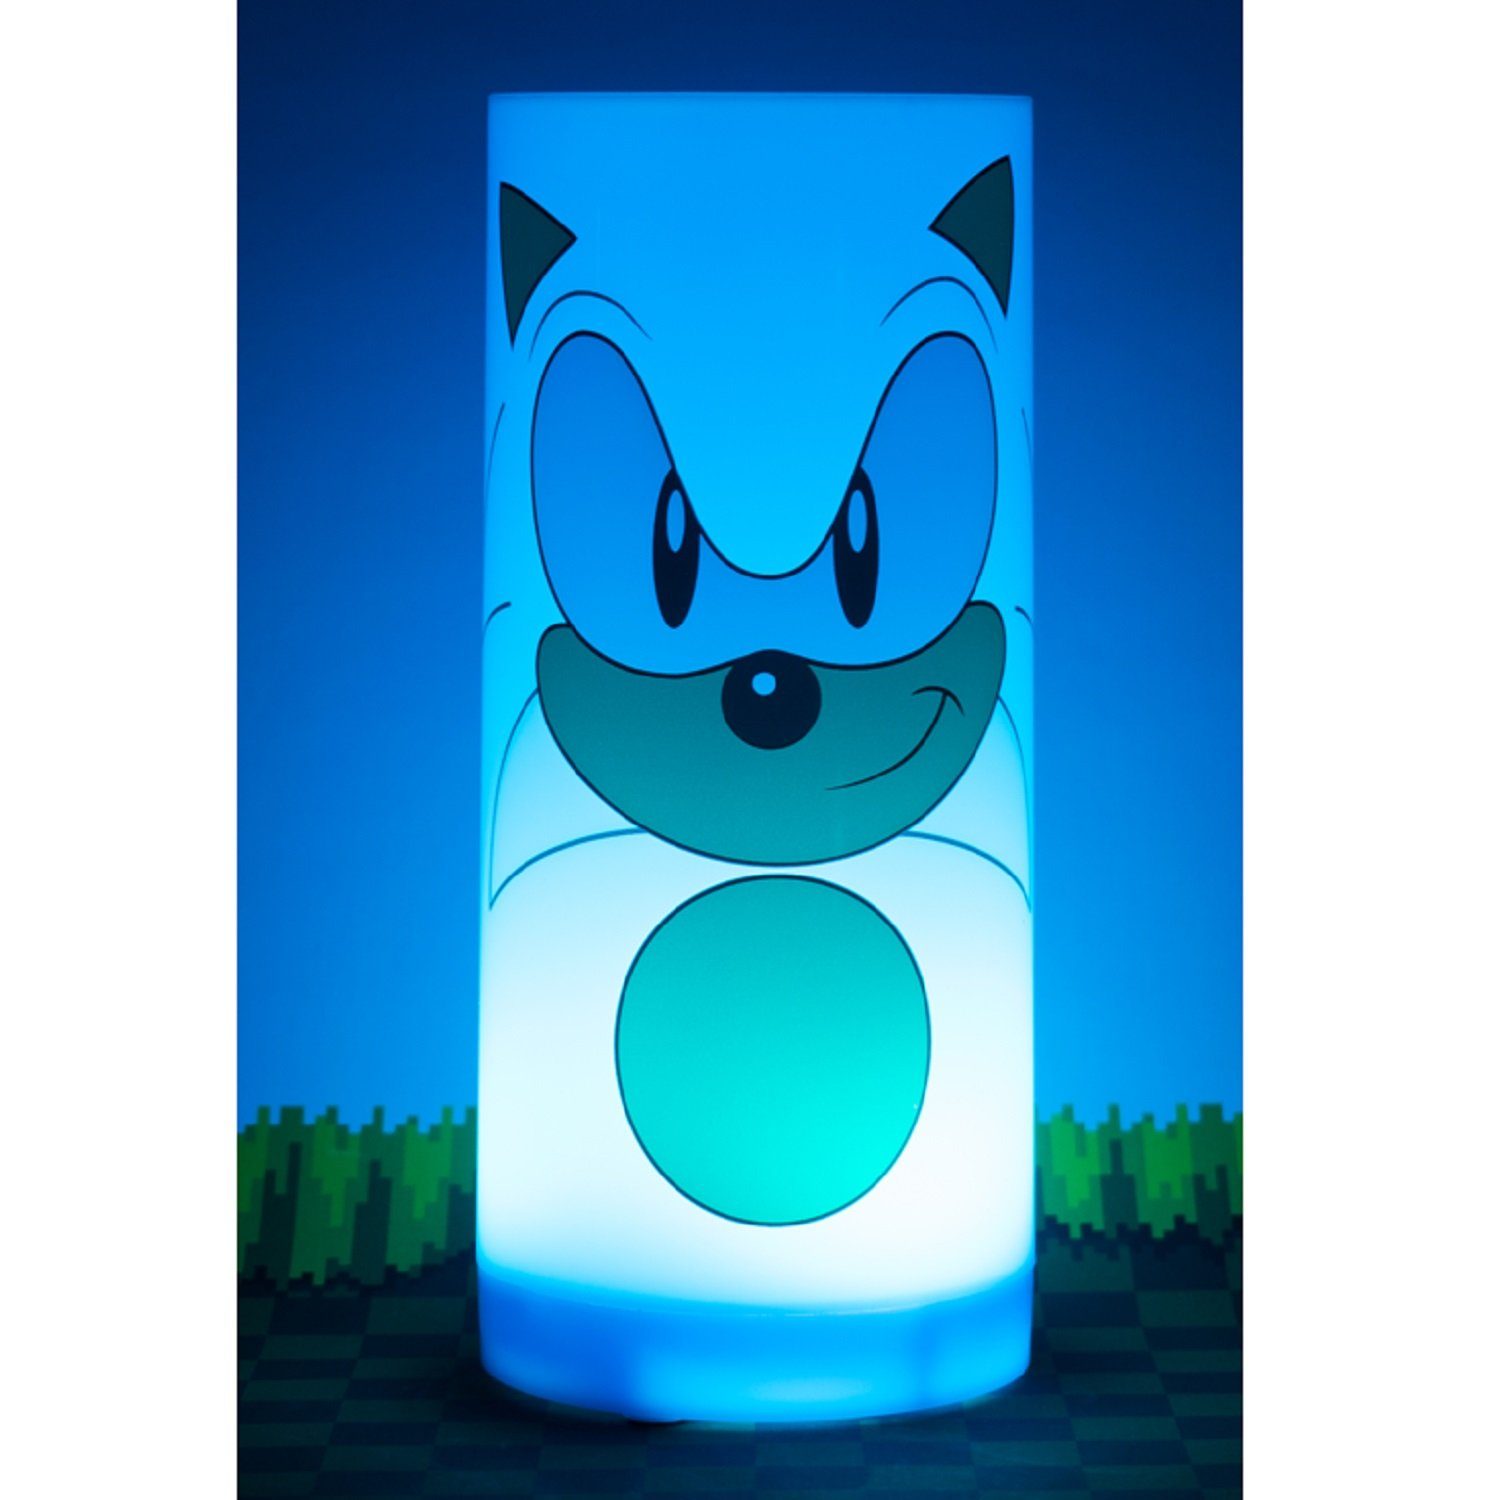 fest - - Sonic Nachttischlampe Tubez-Light, integriert SEGA LED Sonic LED Stimmungslicht LED